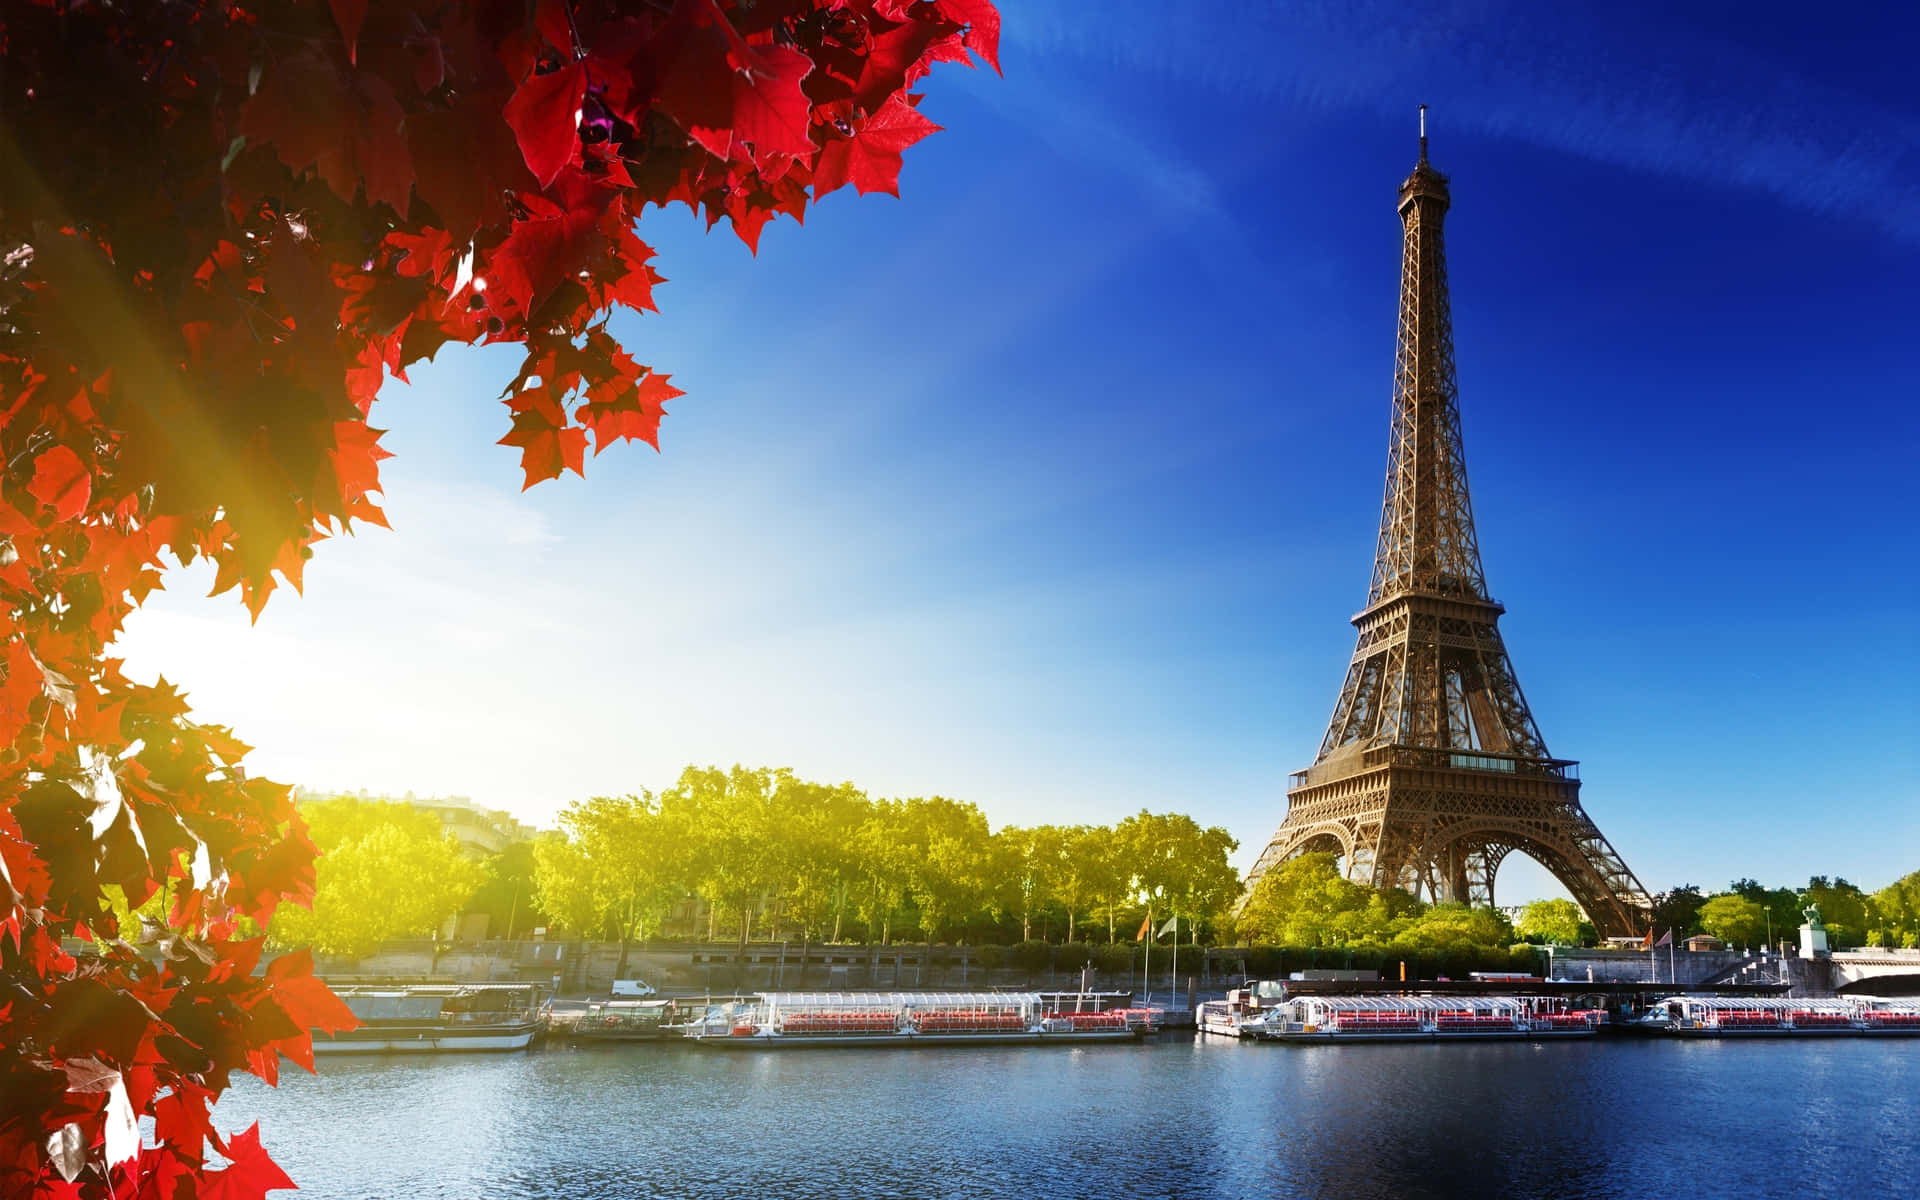 Detimponerande Eiffeltornet Som Stolt Reser Sig Över Ljusets Stad, Paris, I All Sin Majestät.